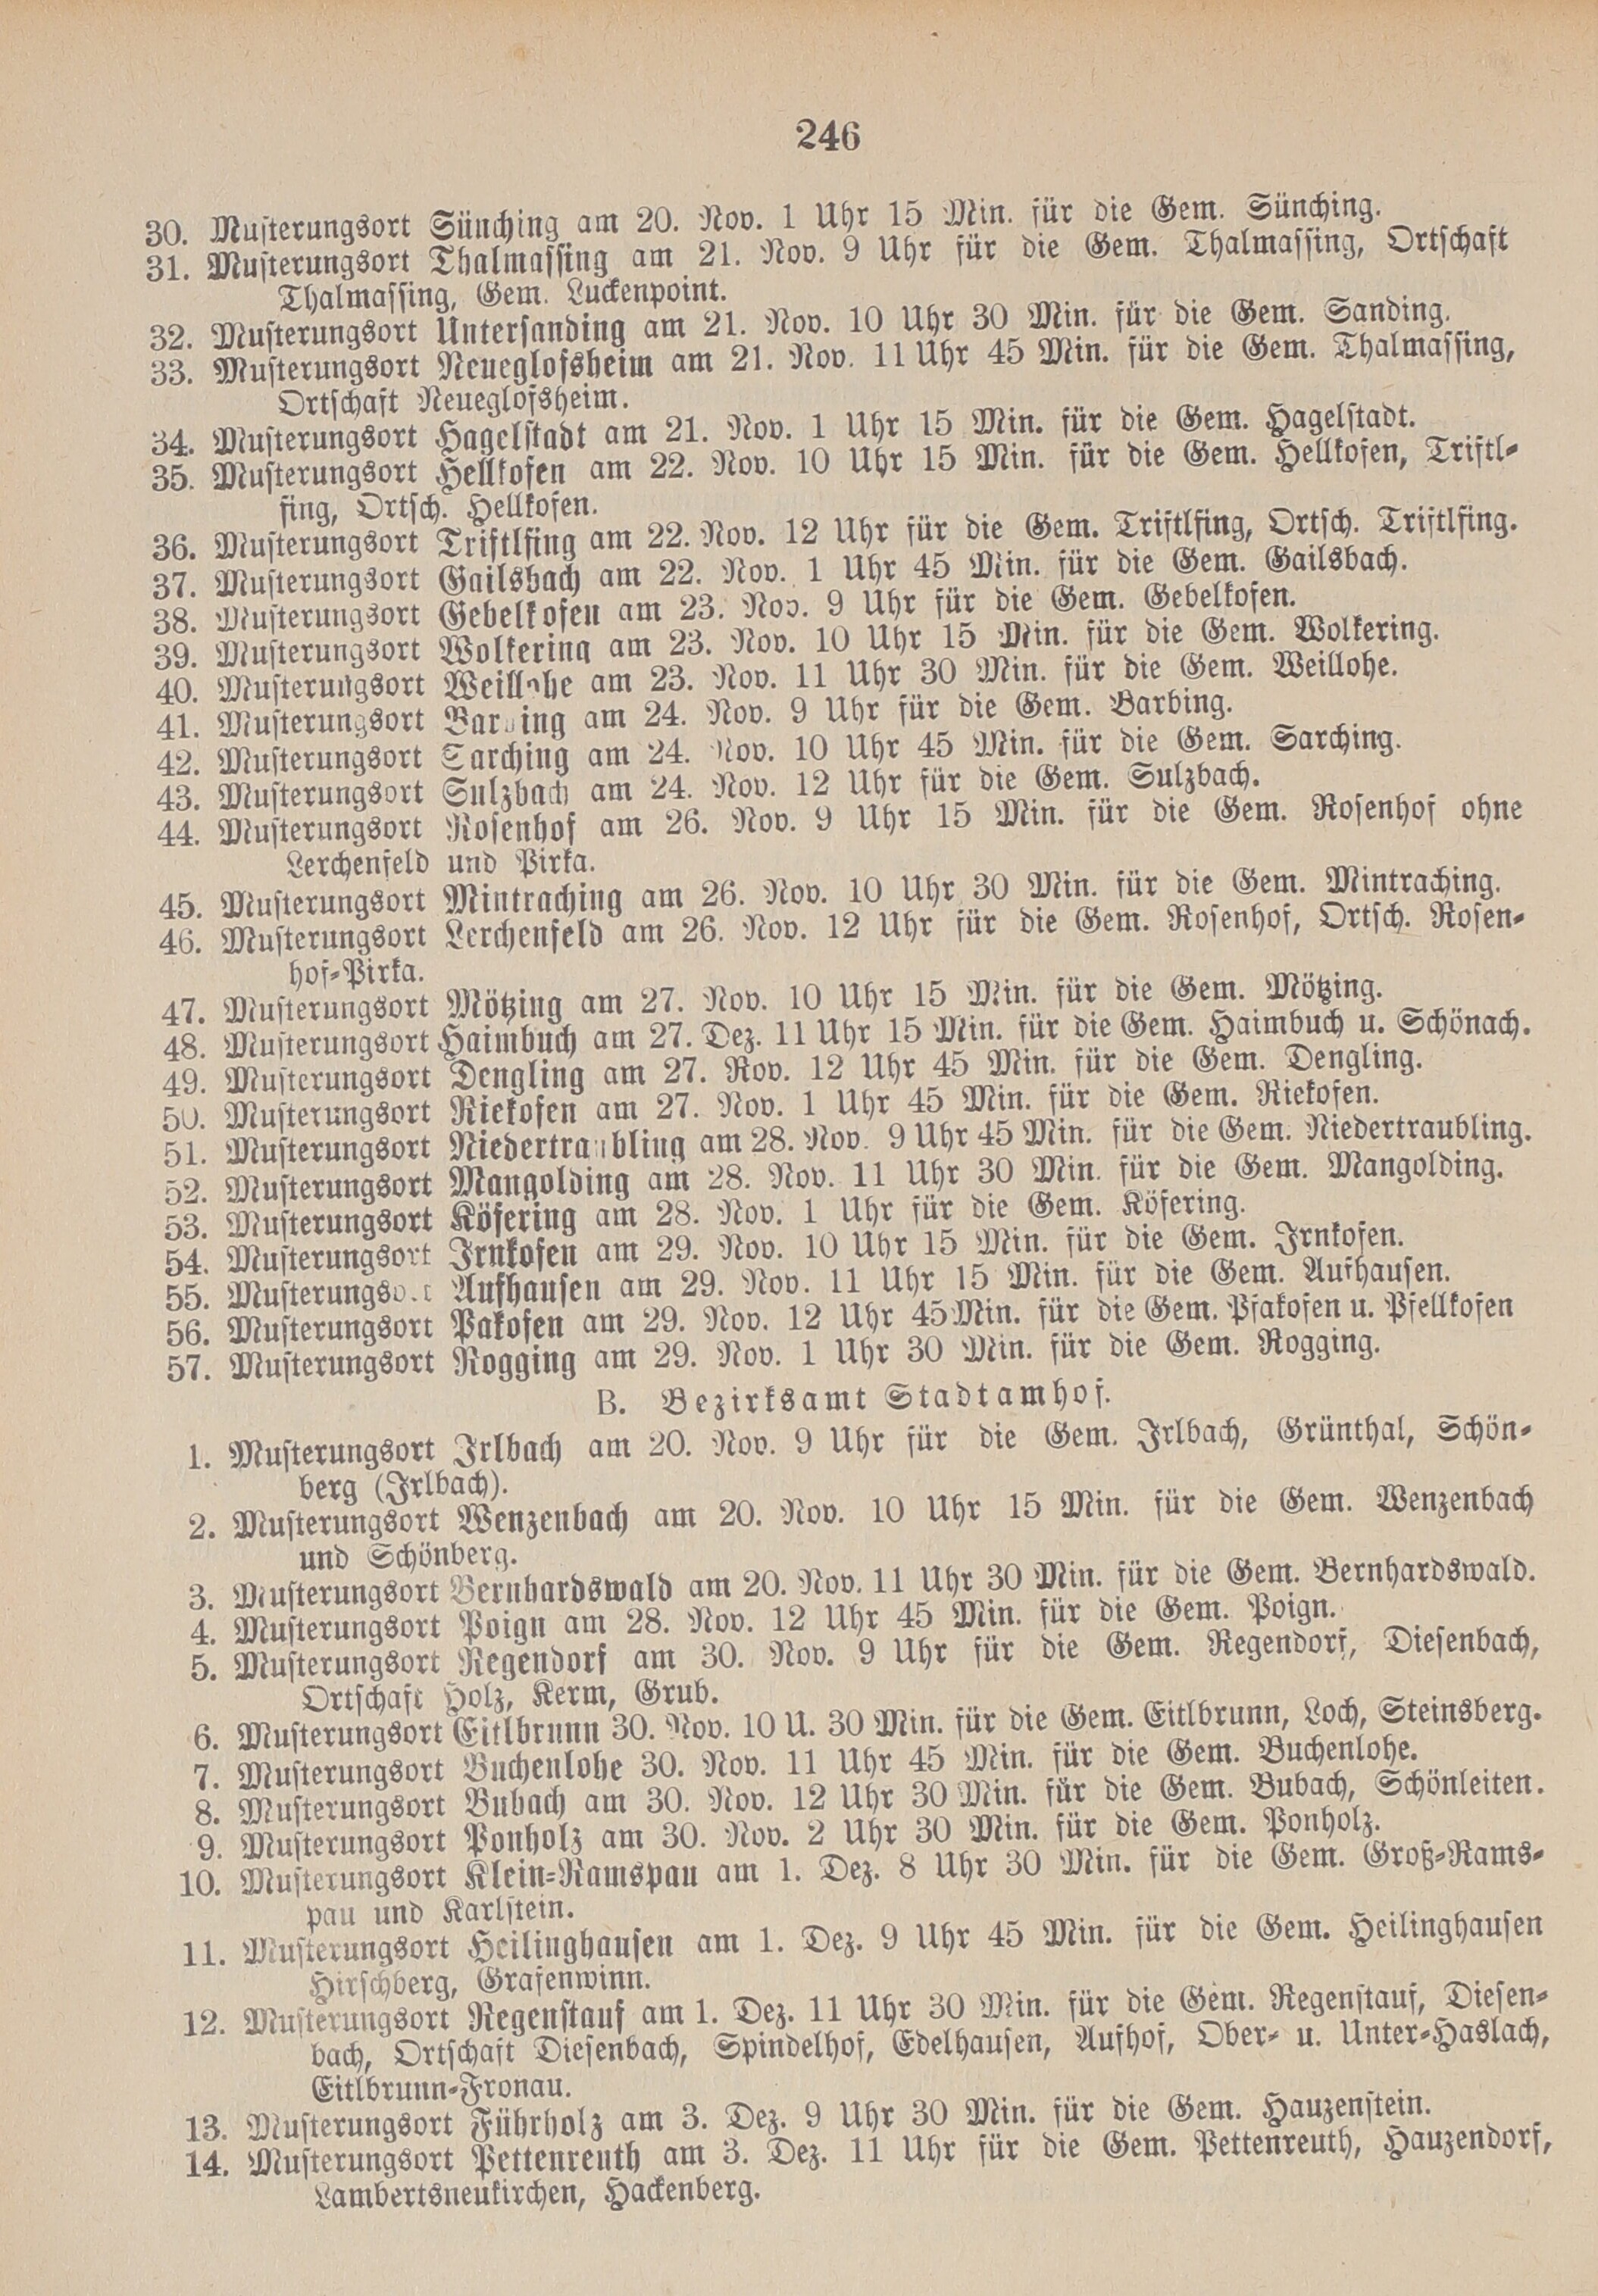 4. amtsblatt-stadtamhof-regensburg-1906-10-14-n41_2610